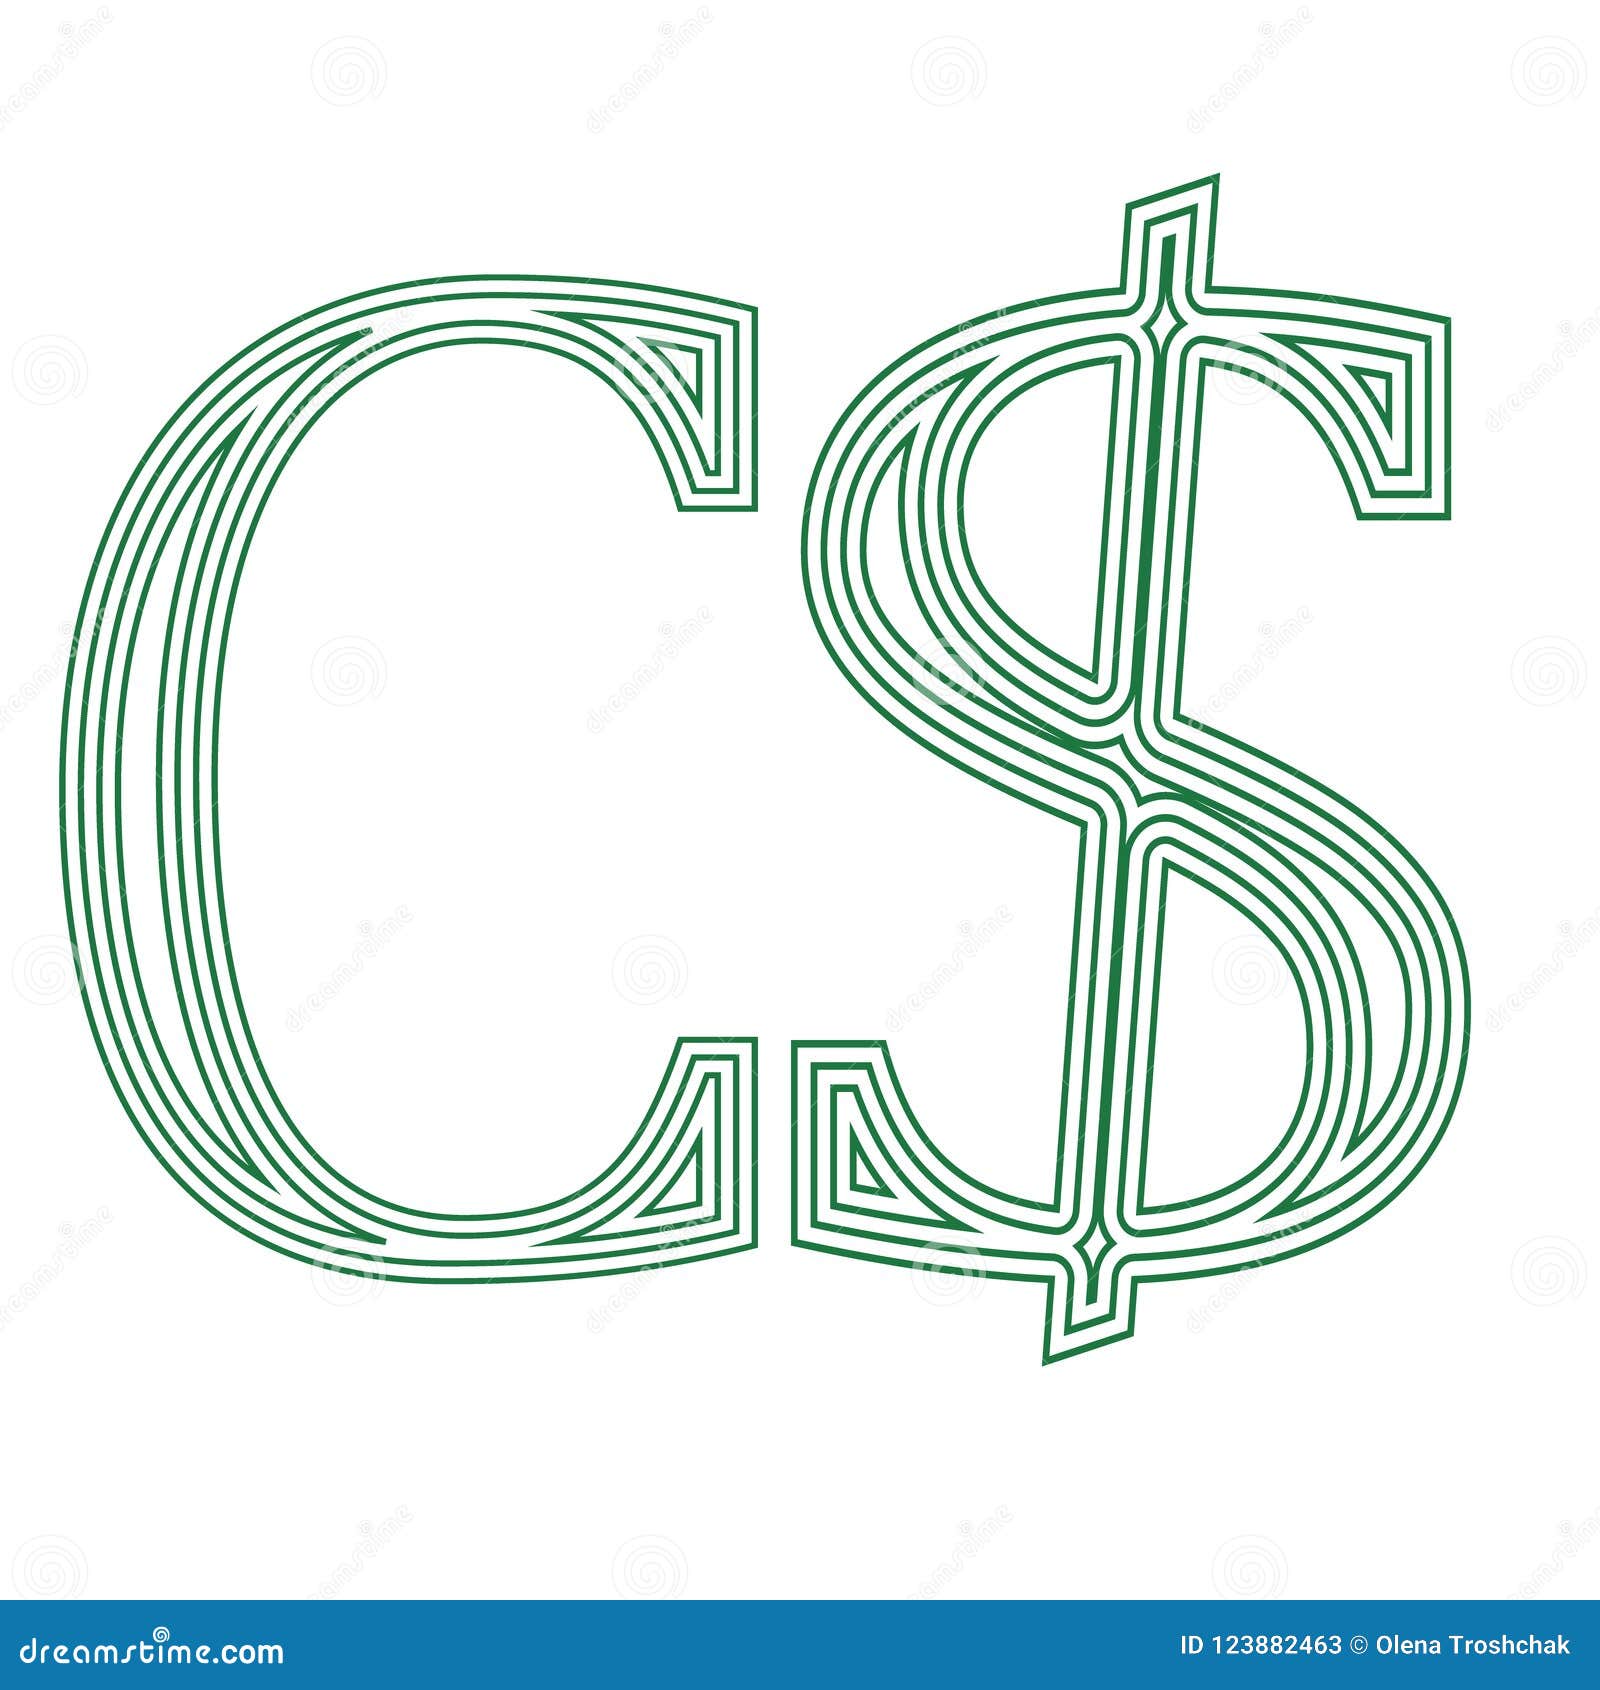 canadian money symbol